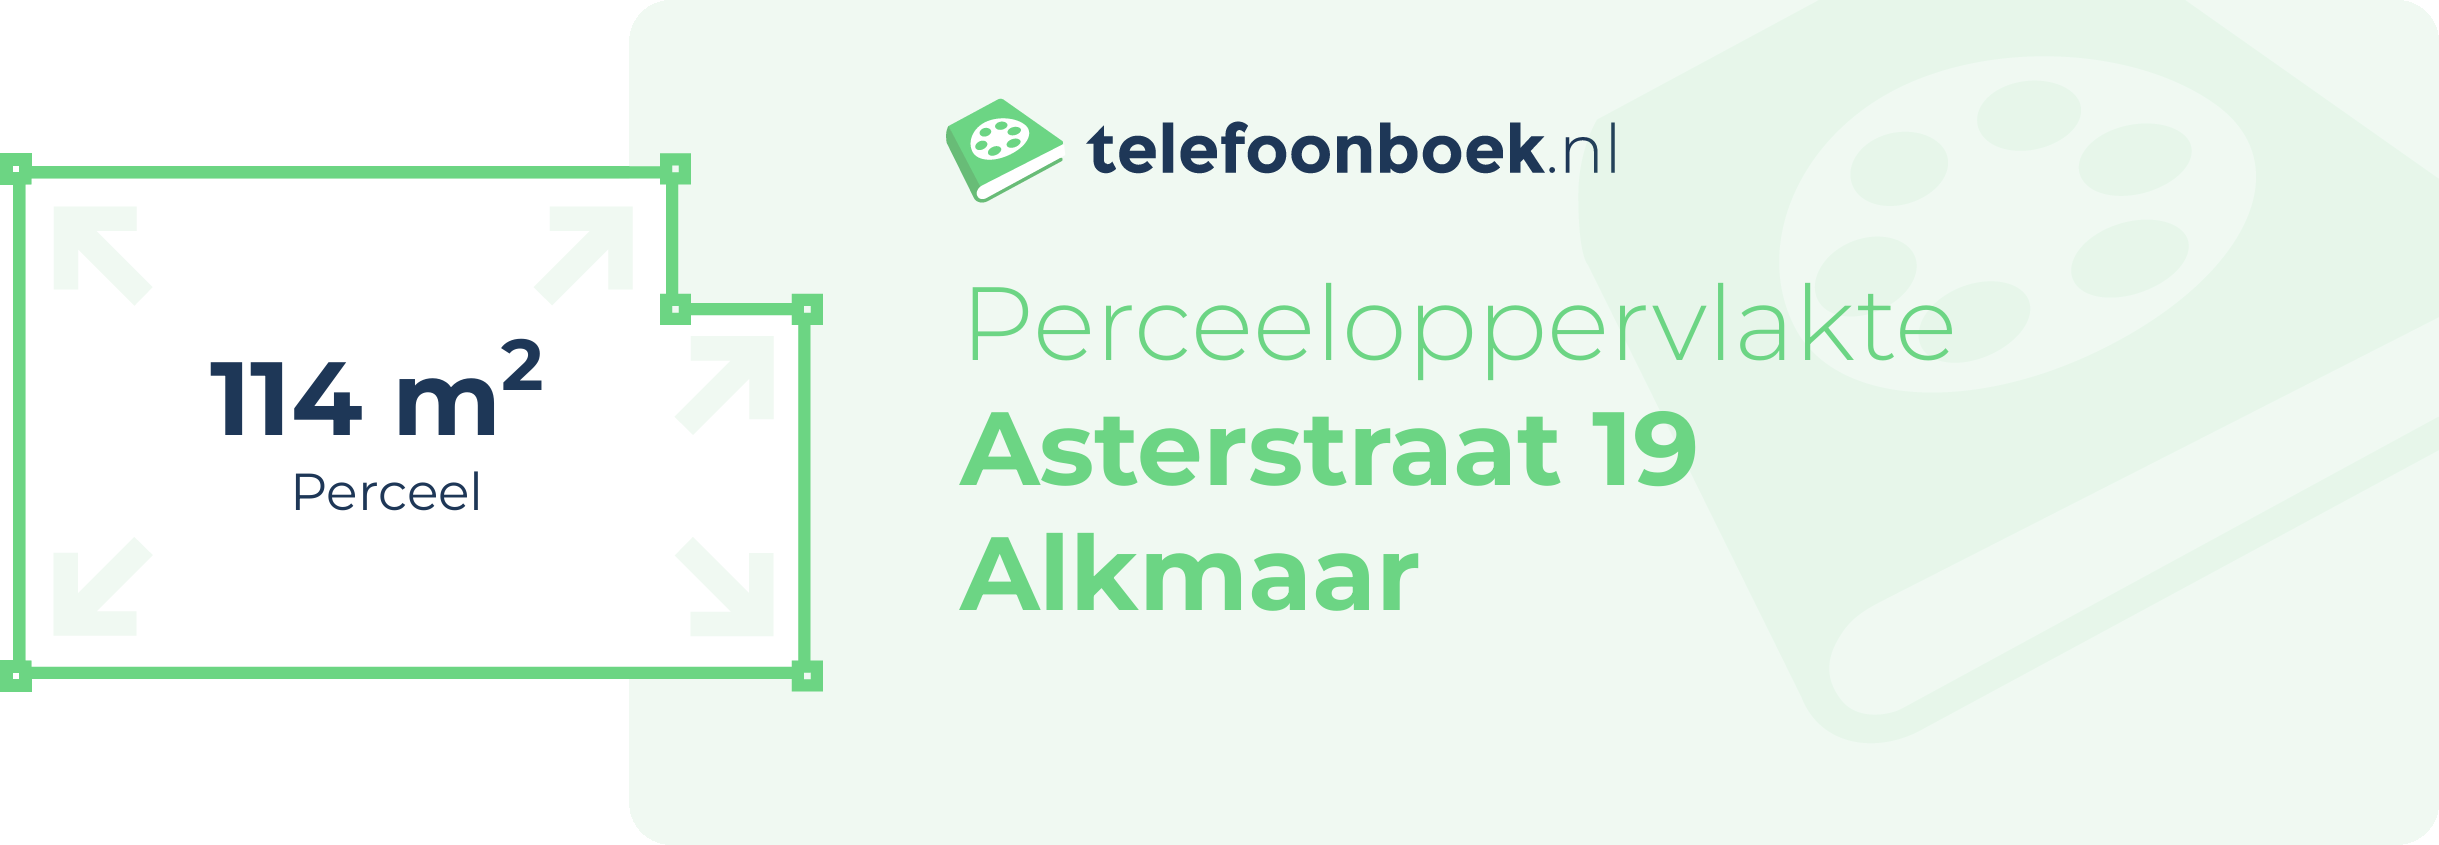 Perceeloppervlakte Asterstraat 19 Alkmaar